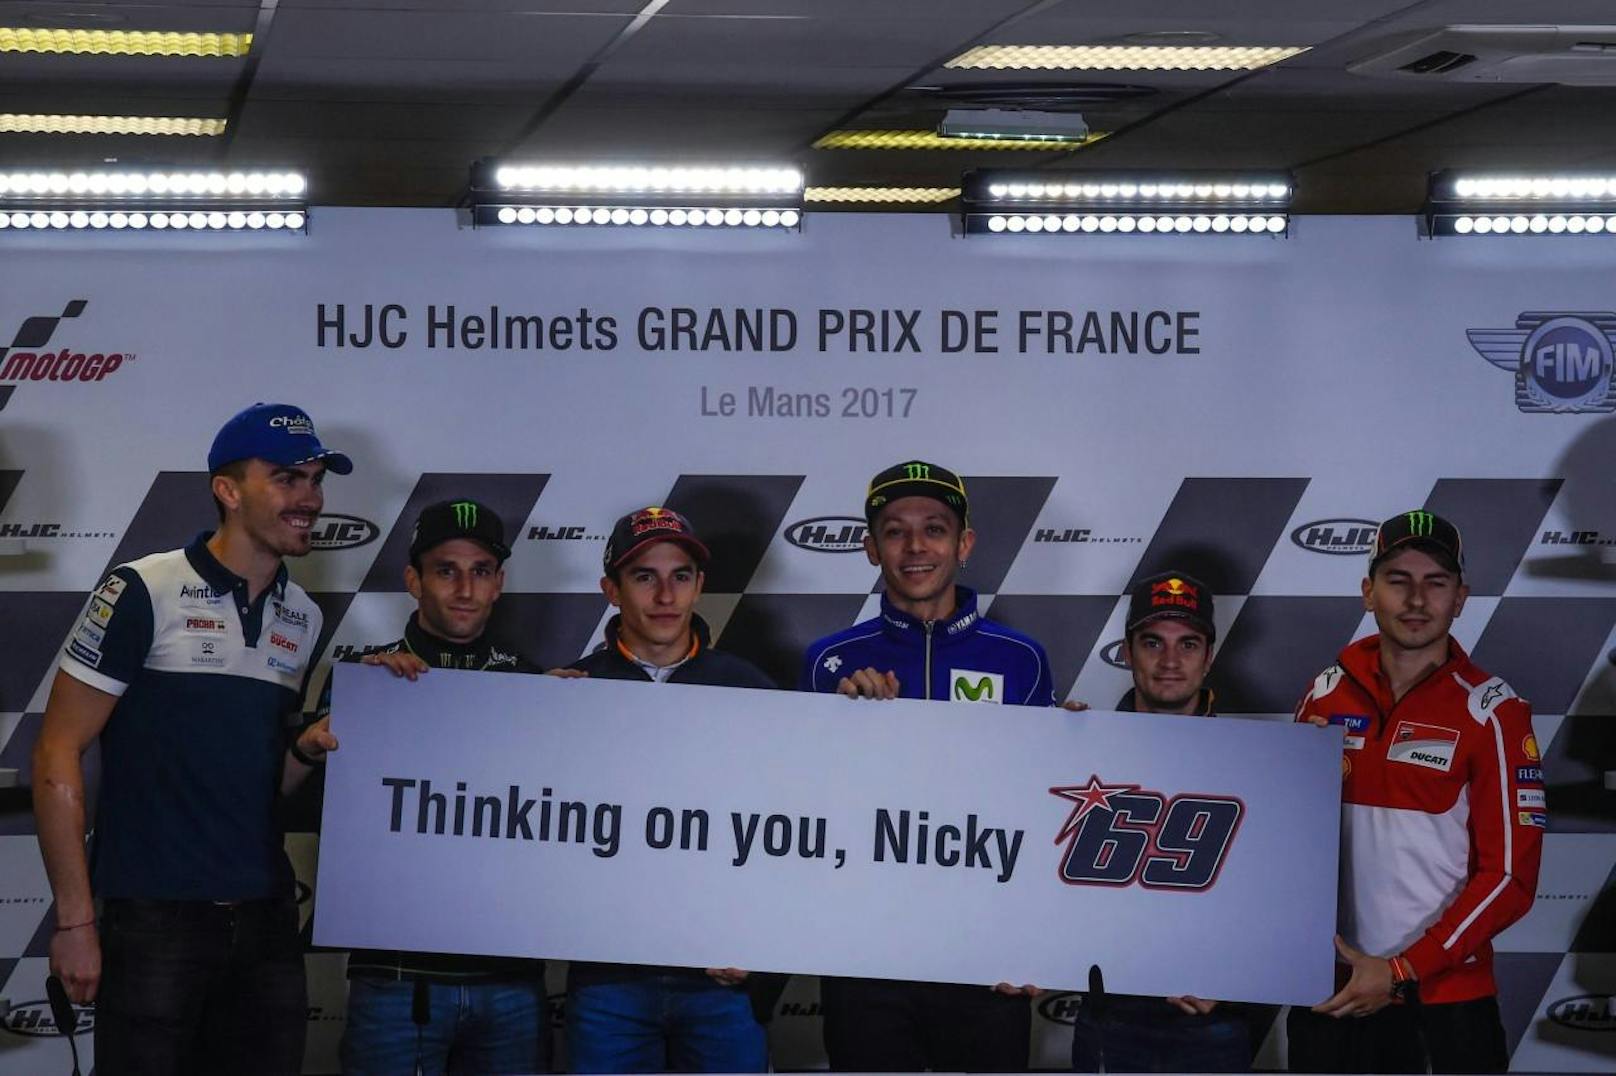 Seine Ex-MotoGP-Kollegen Loris Baz, Johann Zarco, Marc Marquez, Valentino Rossi, Dani Pedrosa und Jorge Lorenzo vor dem Grand Prix von Frankreich mit dem Schild "Thinking on you, Nicky"!